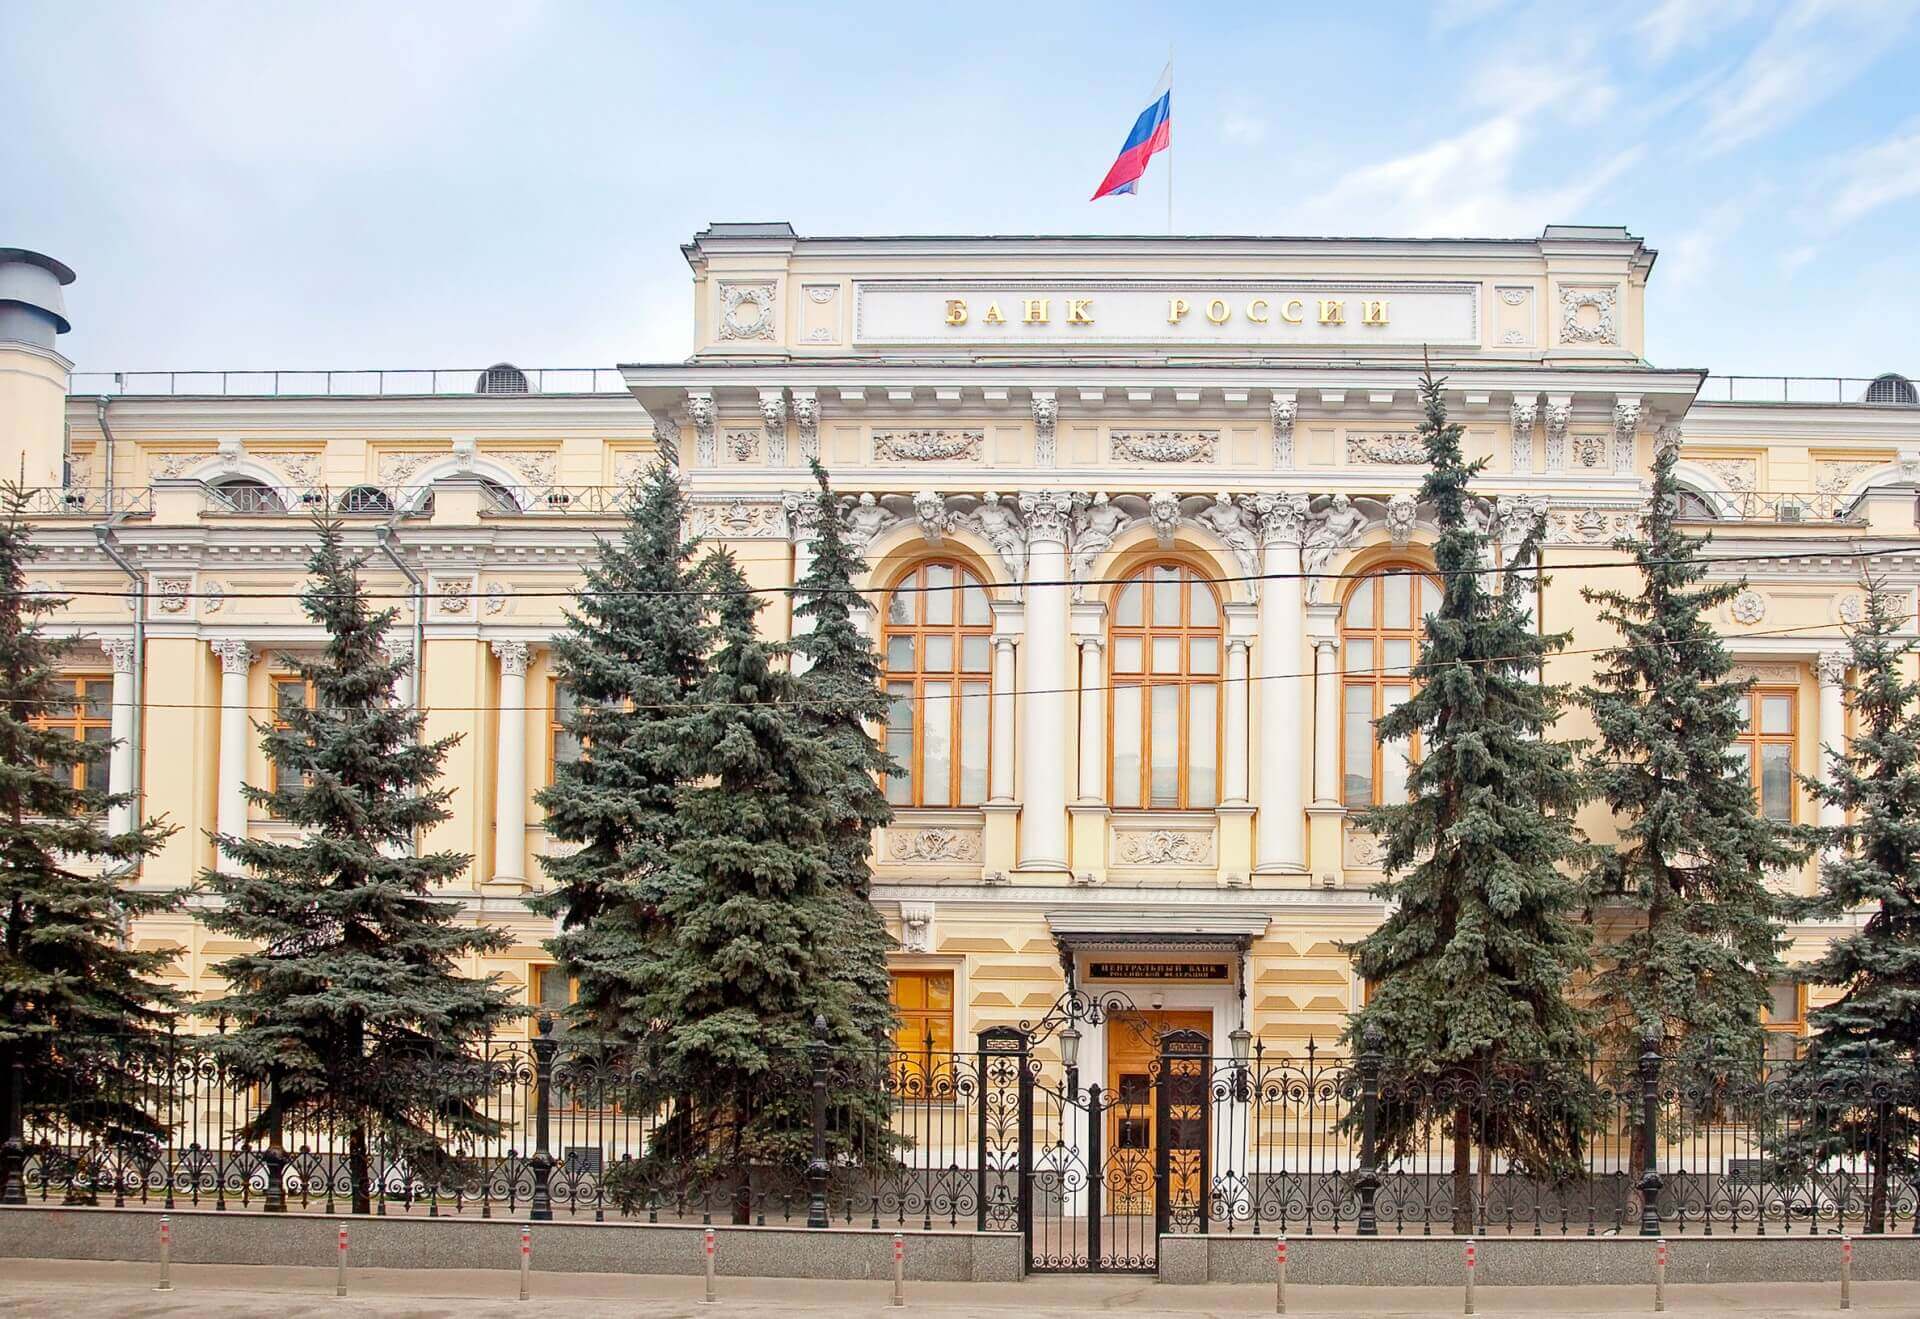 Rusya Merkez Bankası